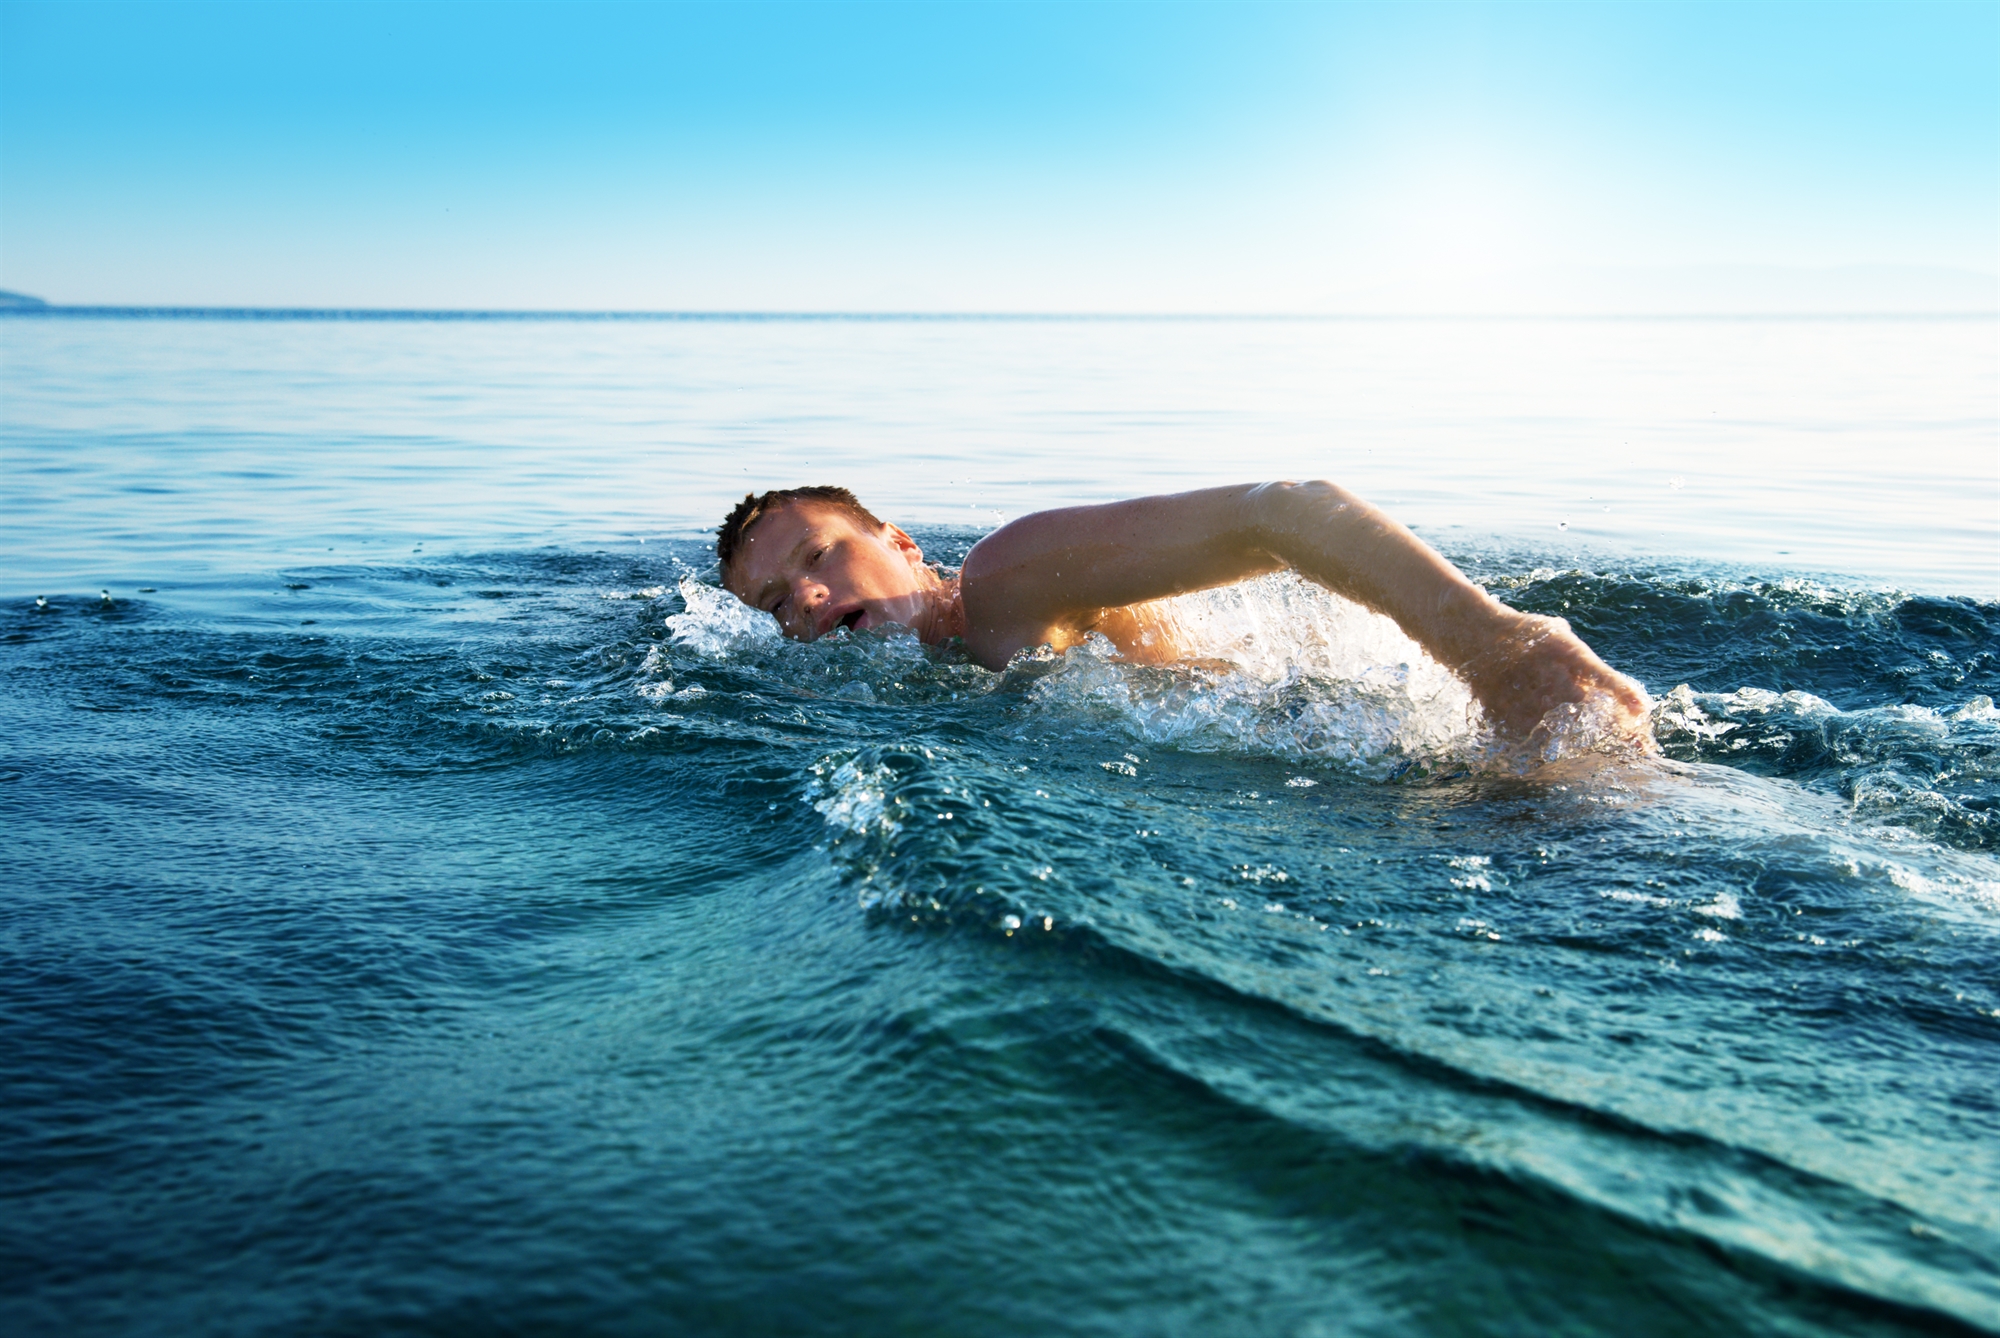 Ποια γνωστή νόσος μπορεί να καταπολεμηθεί με κανέλα και κολύμπι σε κρύα νερά